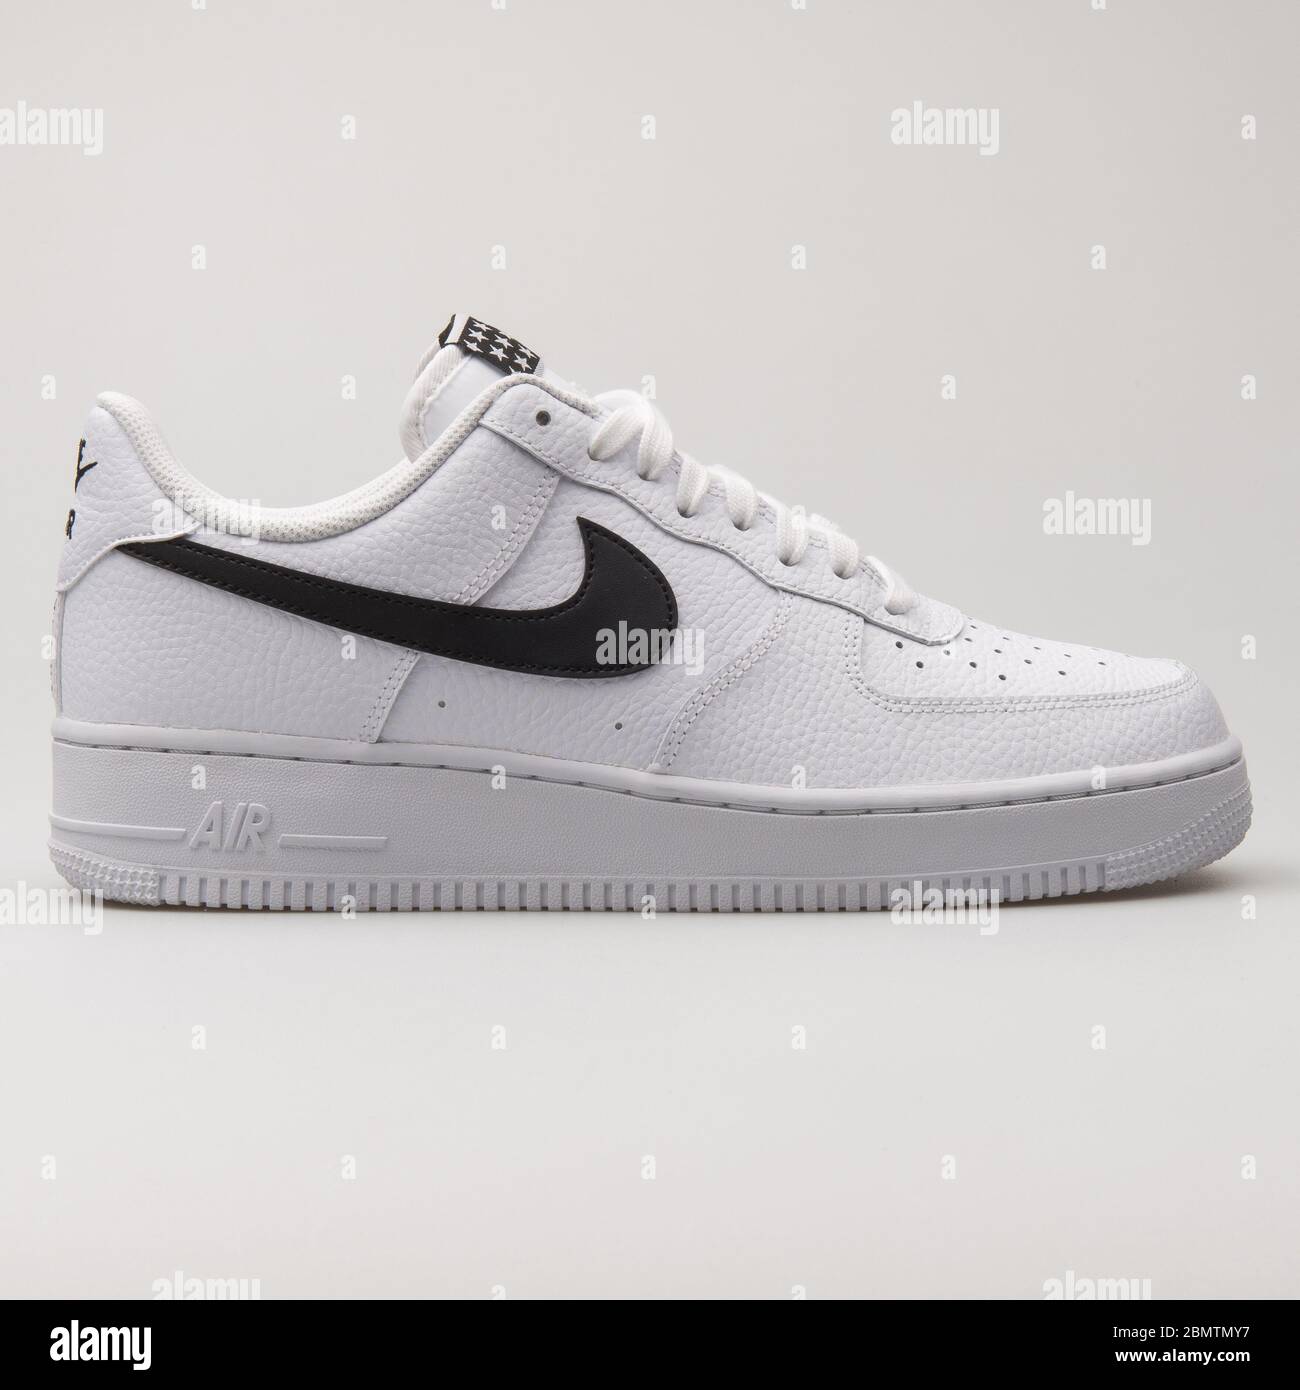 VIENA, - 19 DE FEBRERO de 2018: Nike Air Force 07 sneakers blancas y negras sobre fondo blanco Fotografía de stock - Alamy